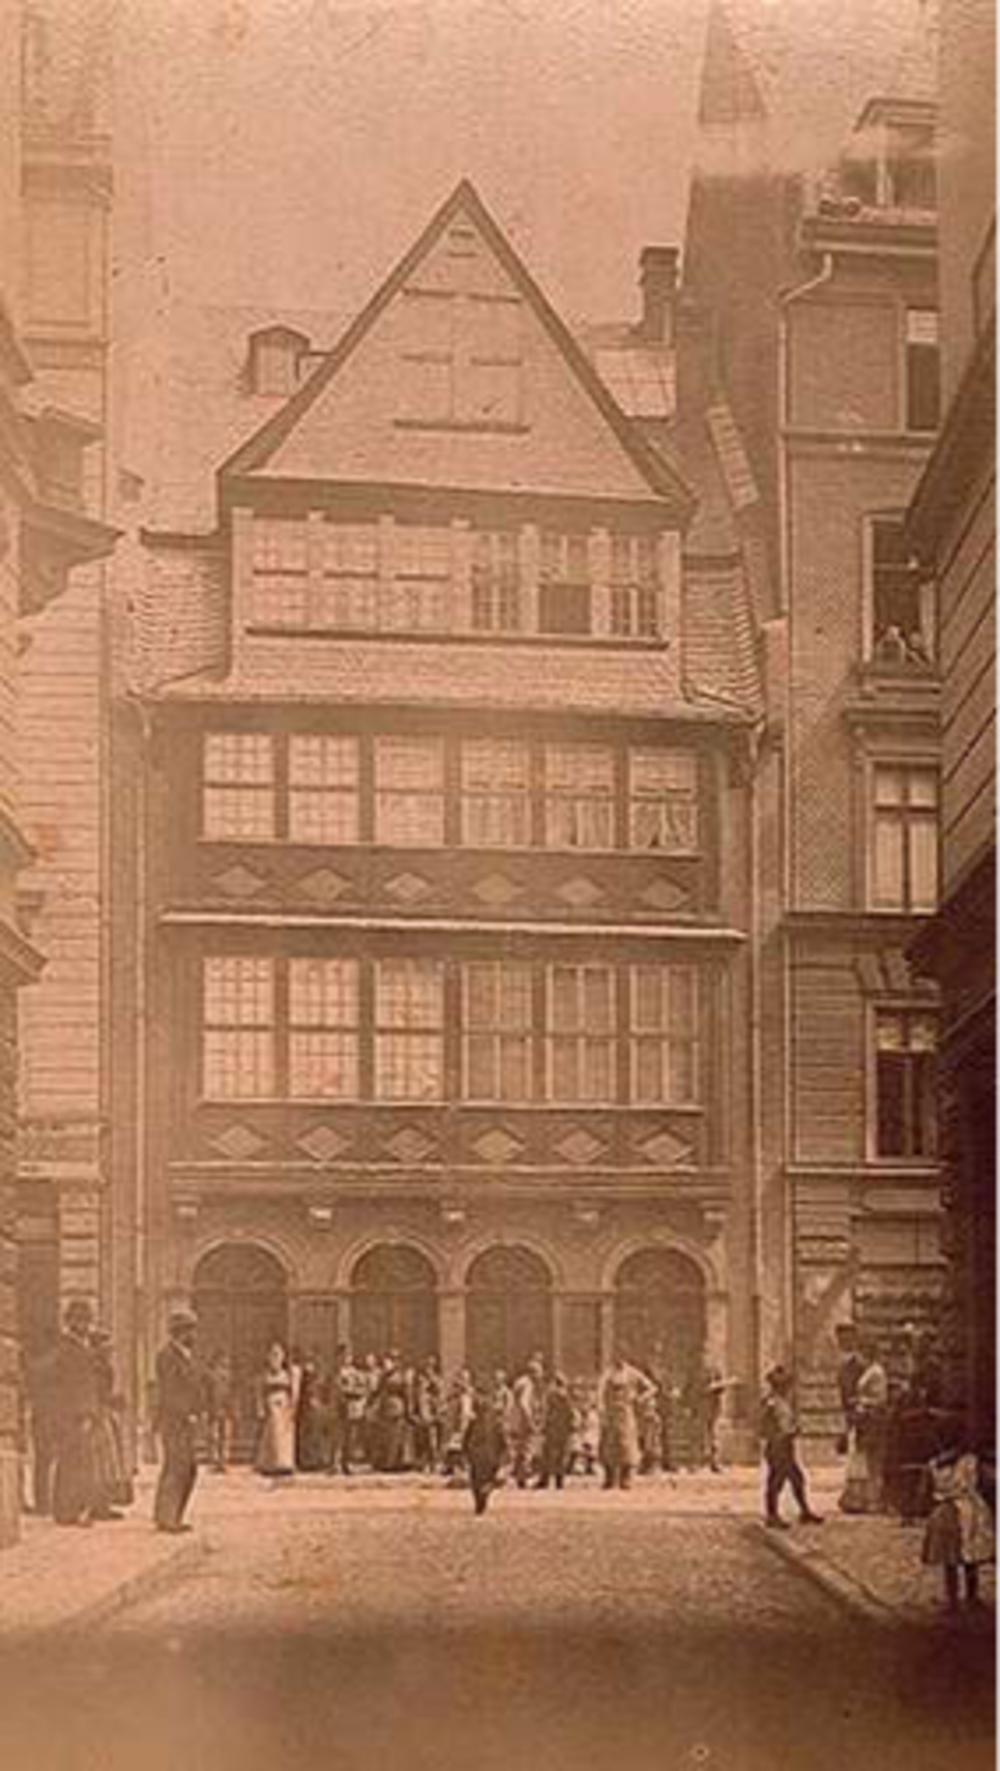 Omstreeks 1810 bouwde Mayer Amschel Rothschild aan de Judengasse een nieuw huis dat het kloppend hart van het bankiers- en handelshuis werd. Hier zou hij in 1812, op 68-jarige leeftijd, overlijden. Zijn vrouw Gutle bleef er de resterende 37 jaar van haar leven wonen.